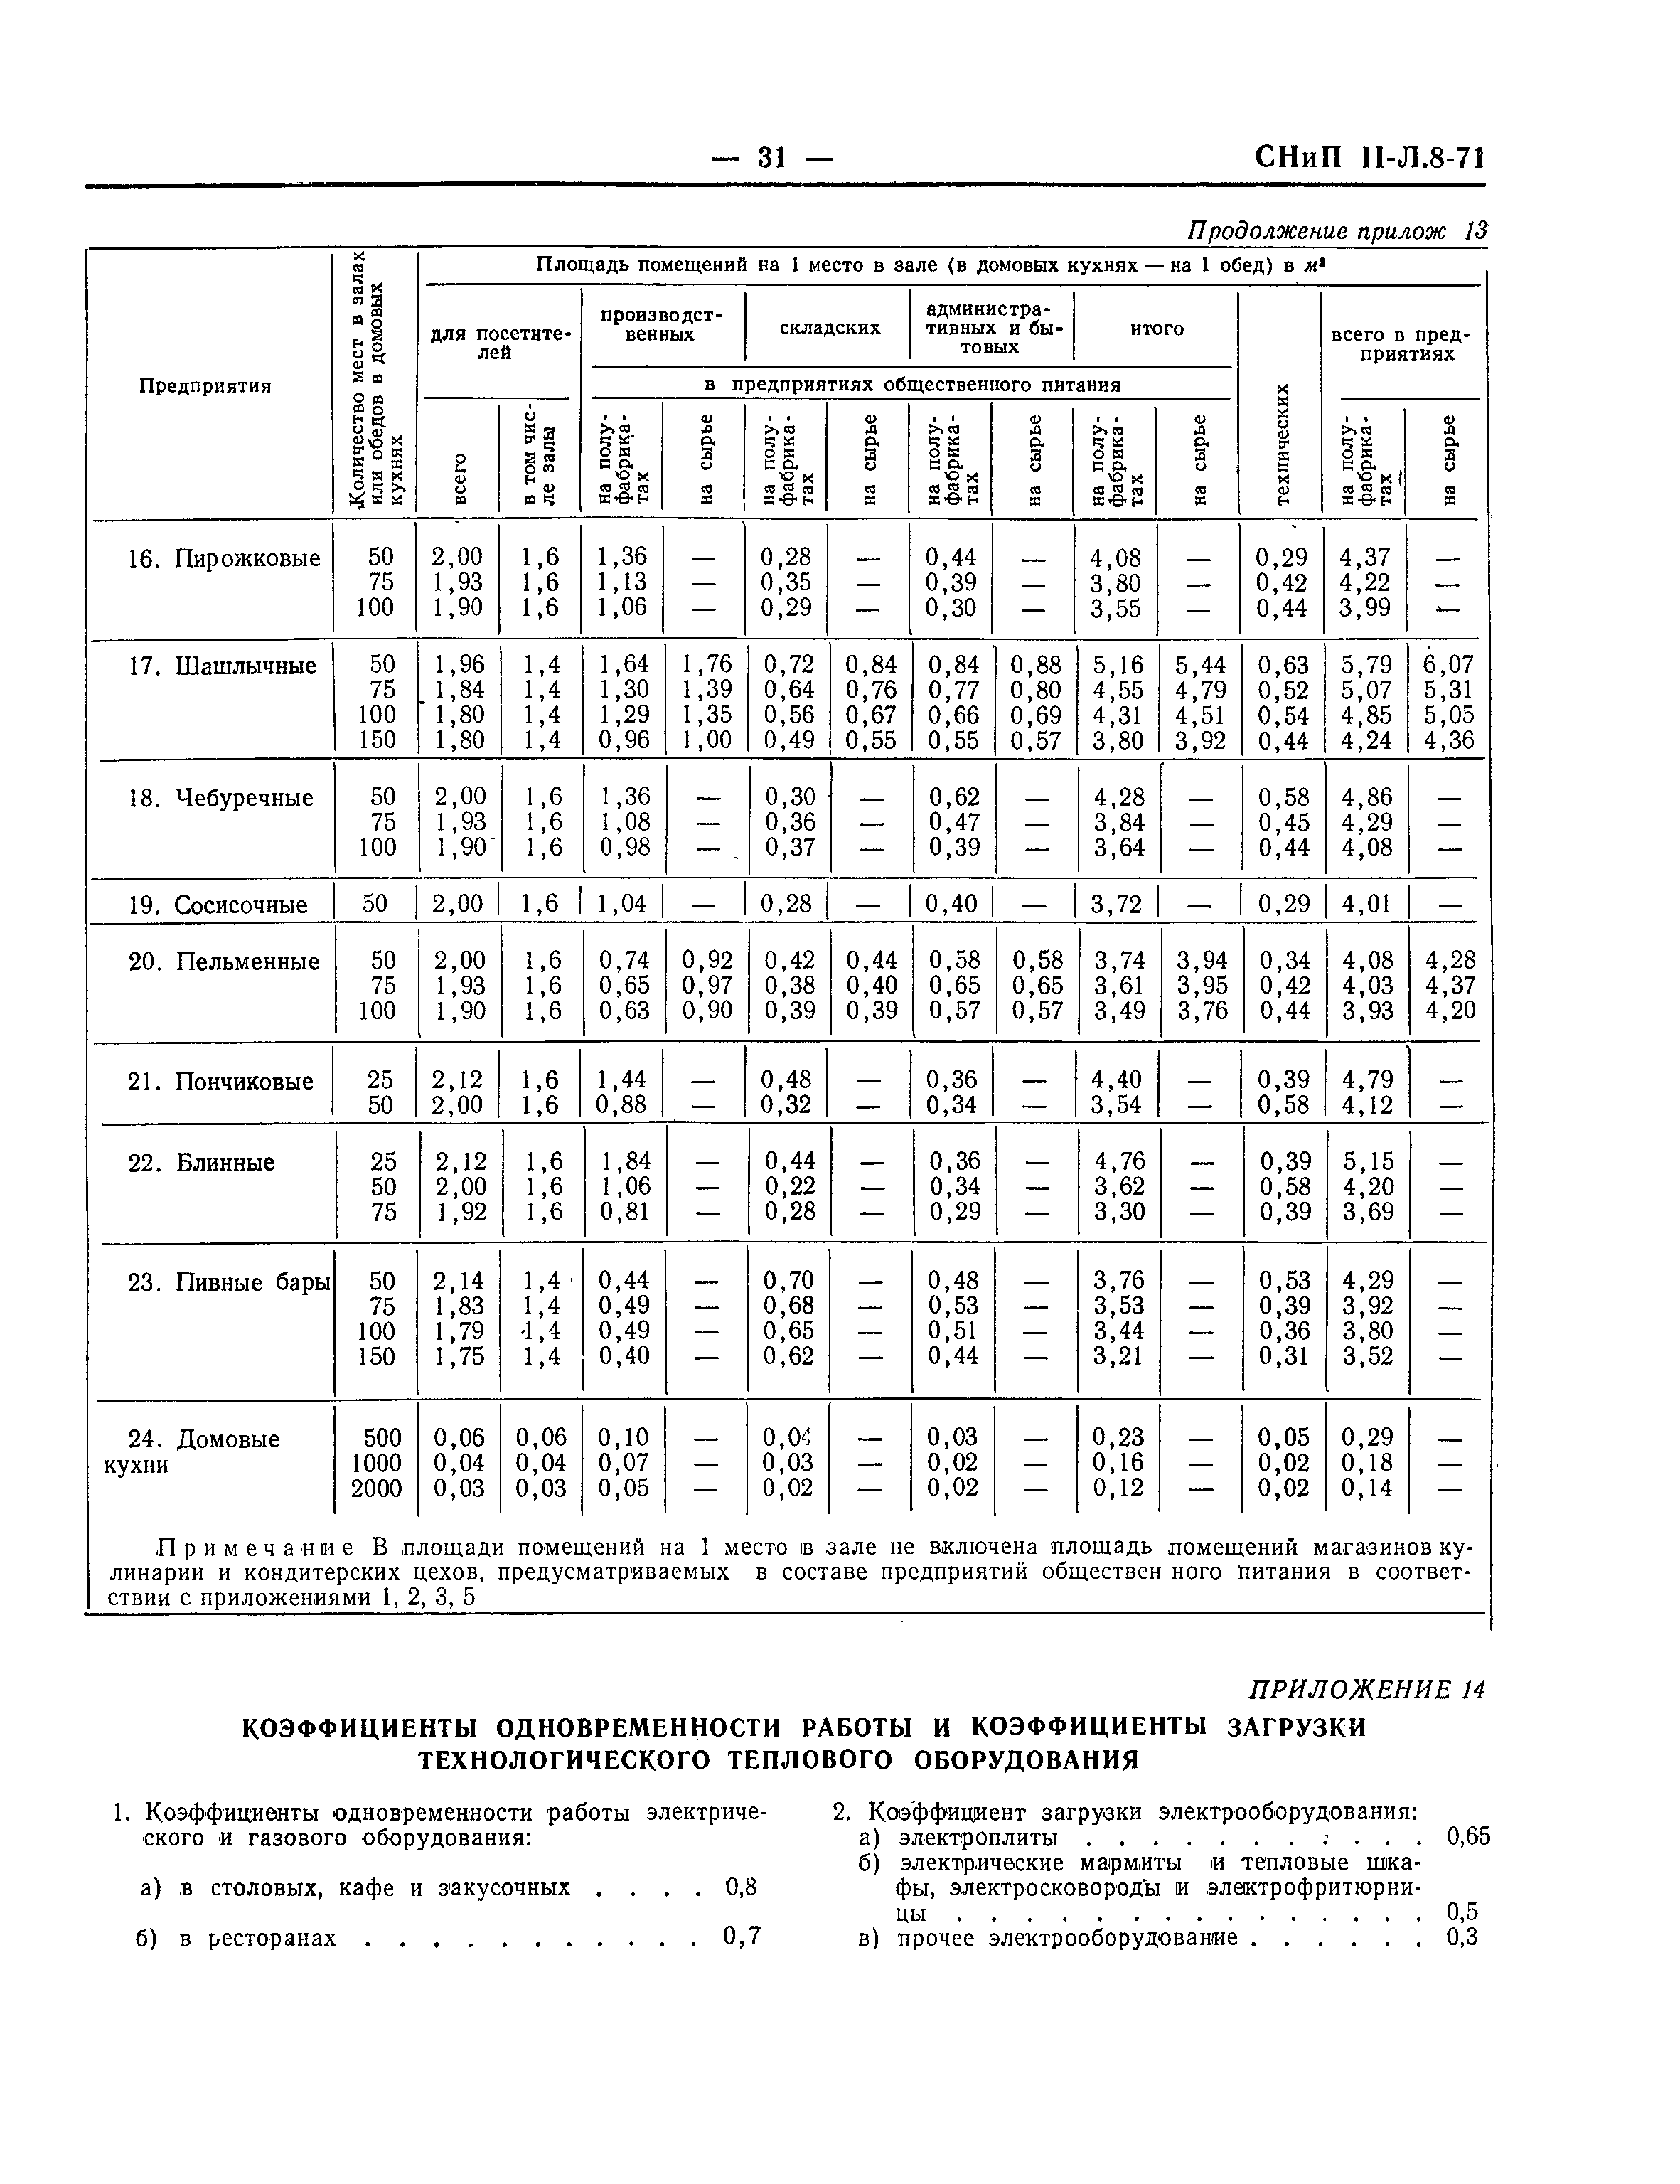 СНиП II-Л.8-71